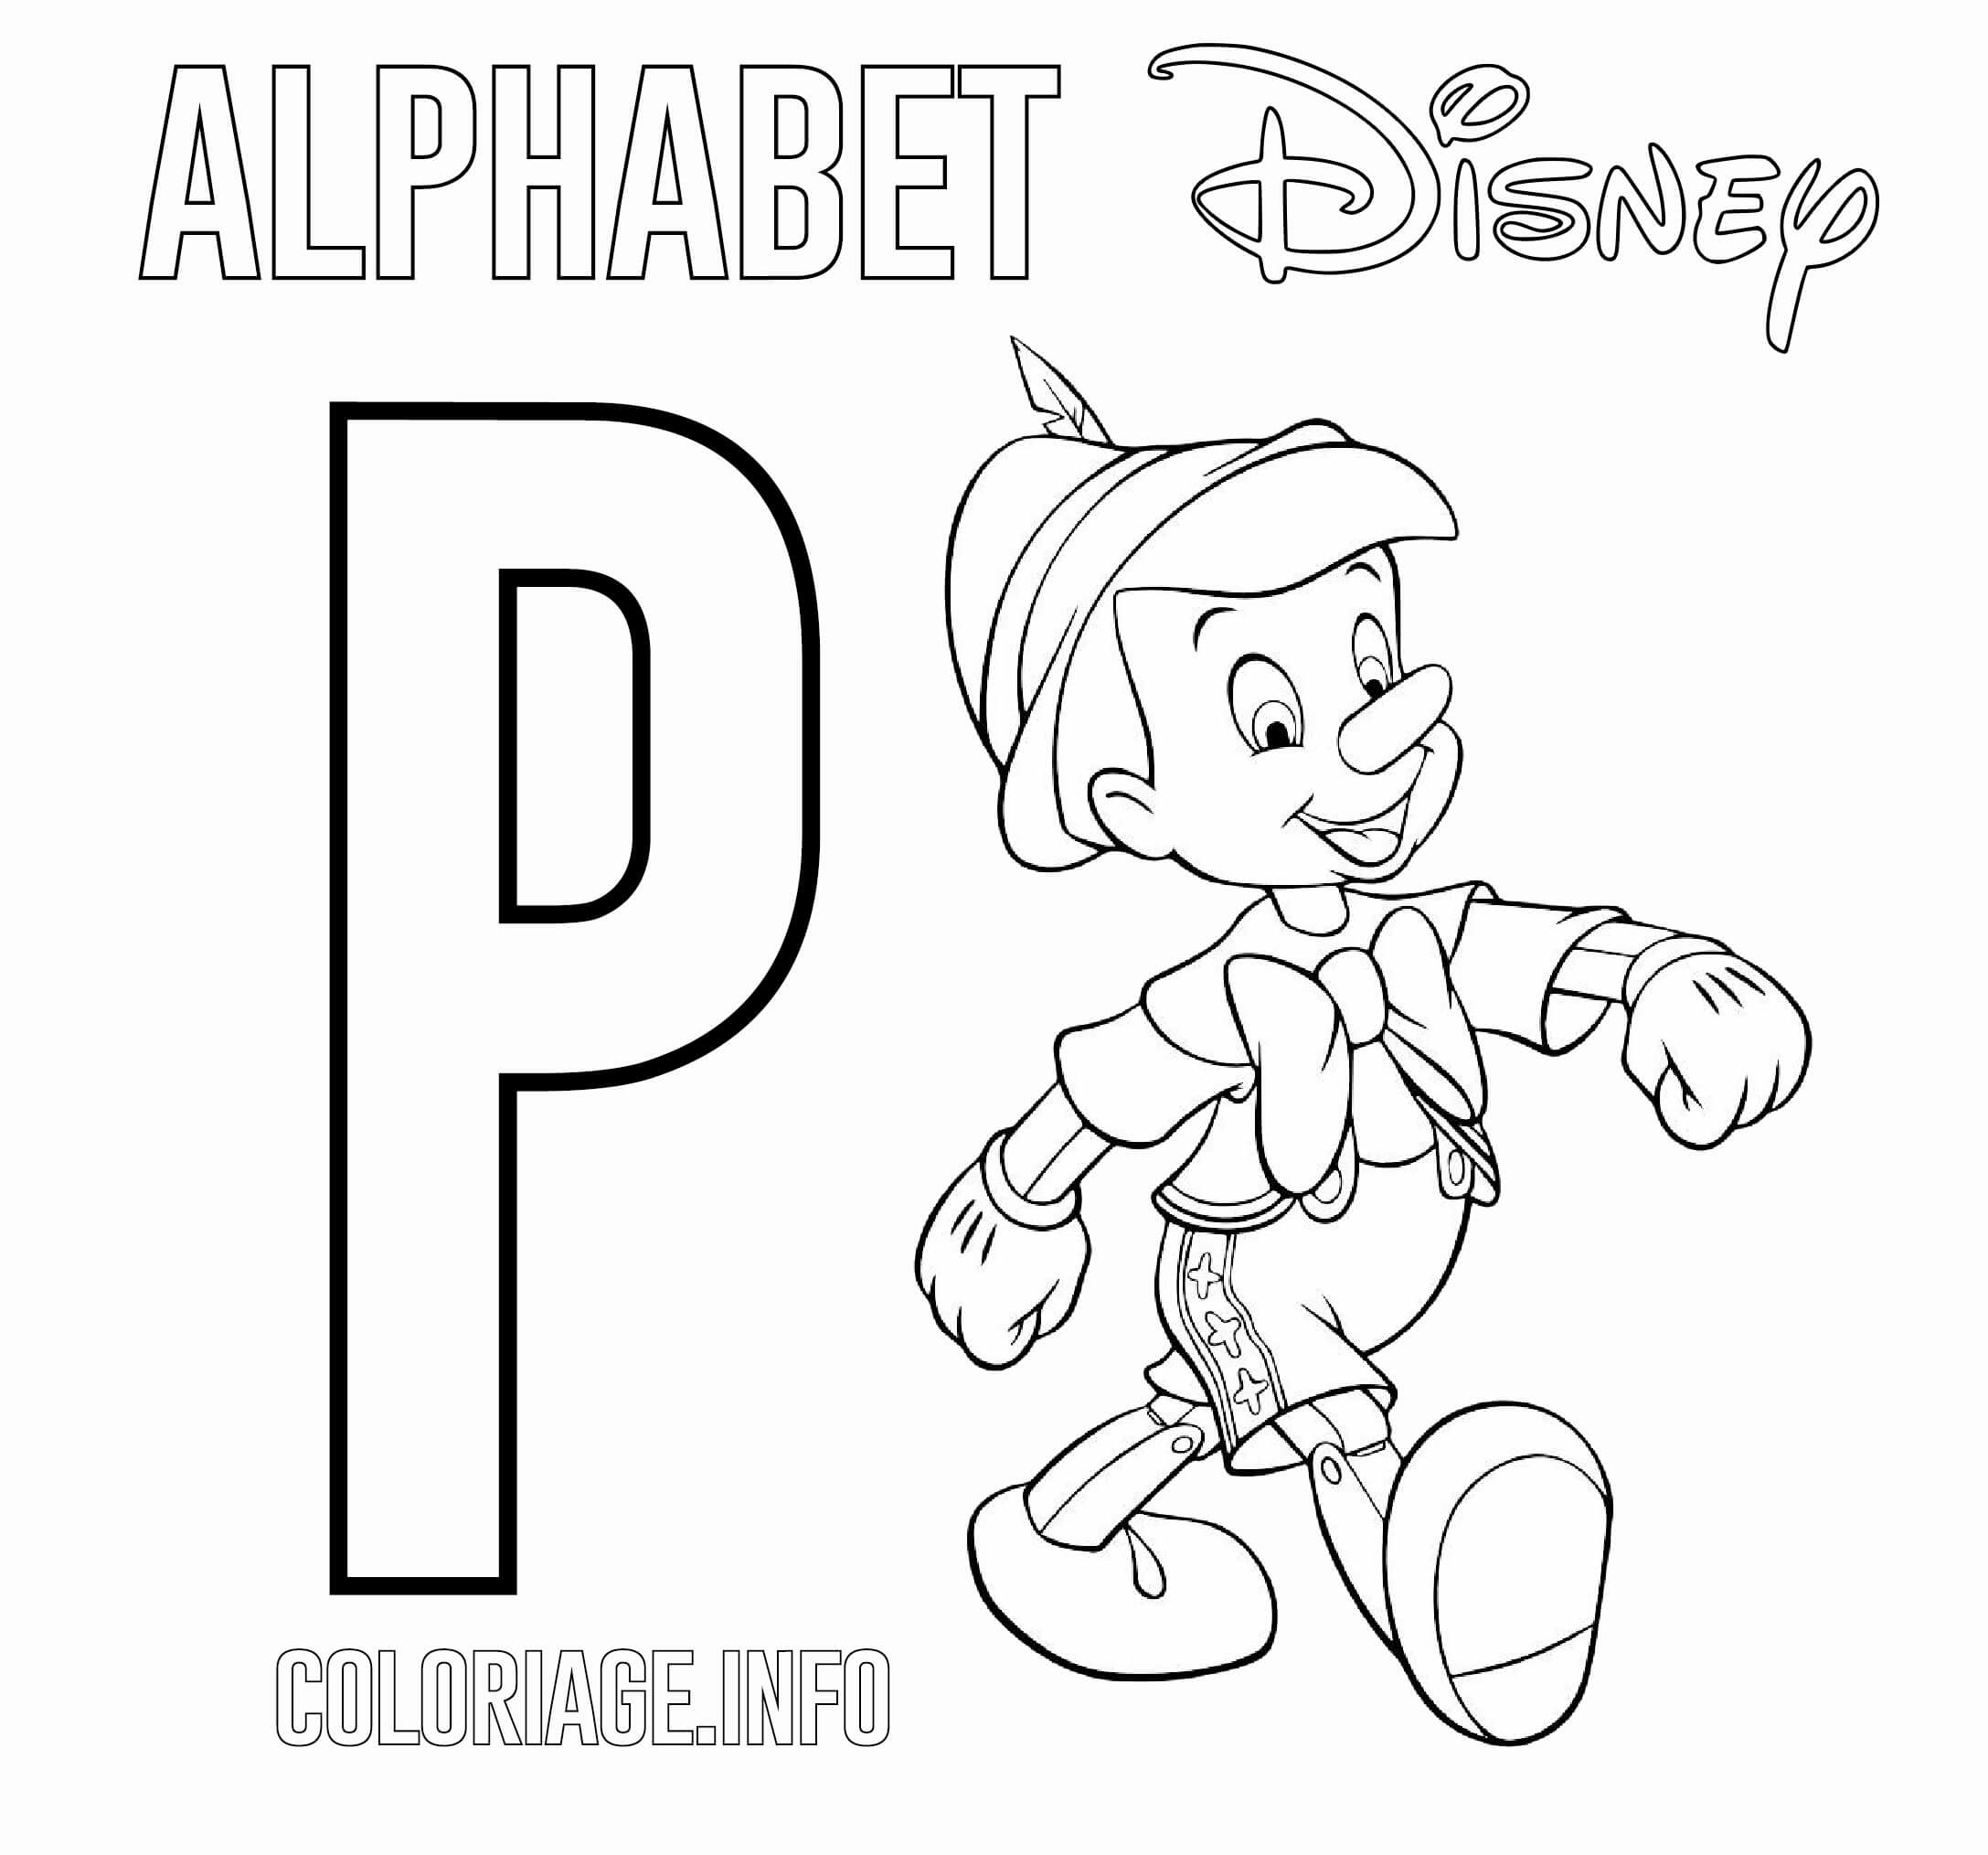 coloriage Lettre P pour Pinocchio Disney